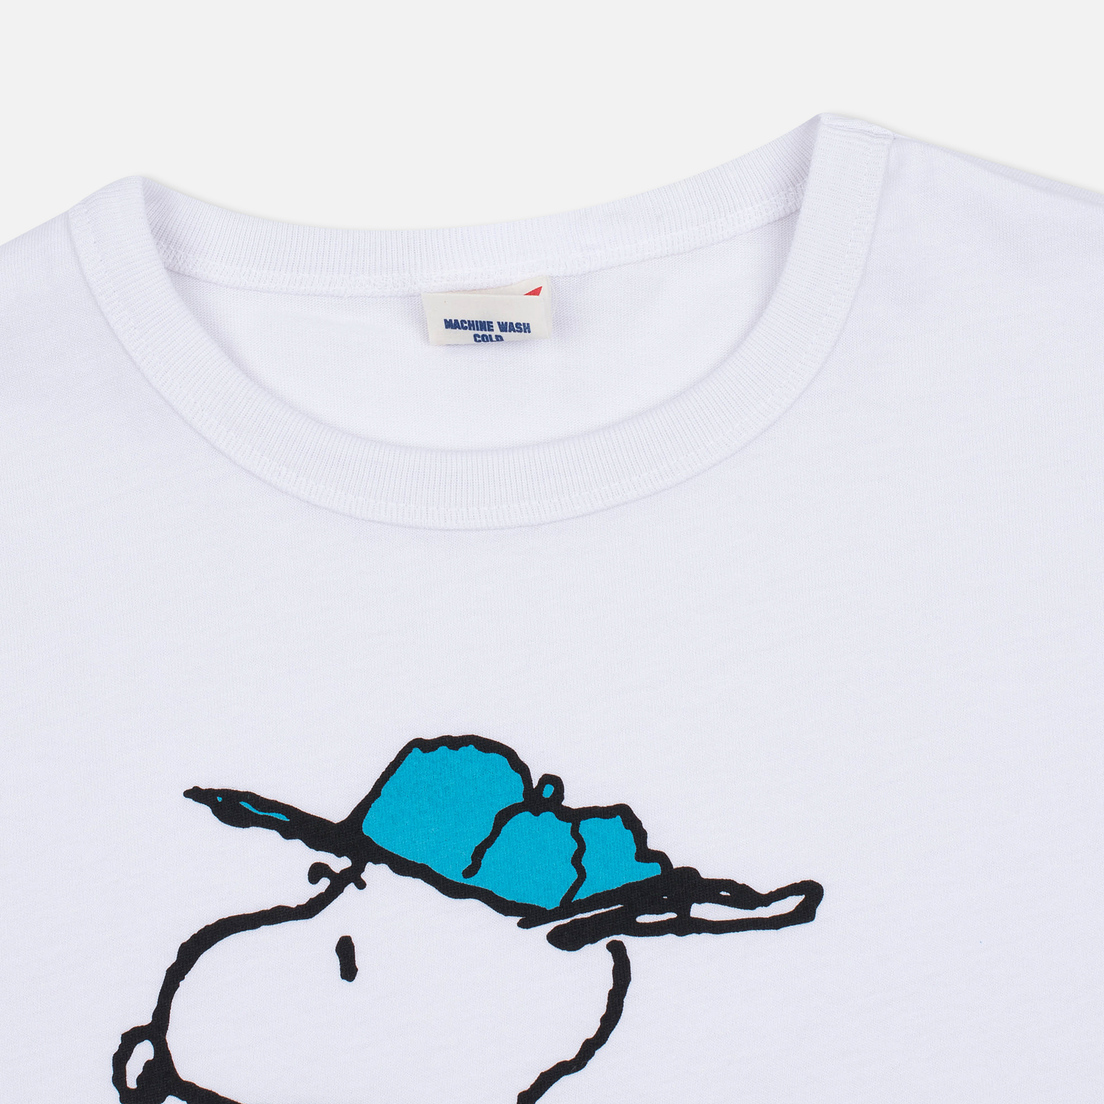 TSPTR Мужская футболка Snoopy Santa Cruz